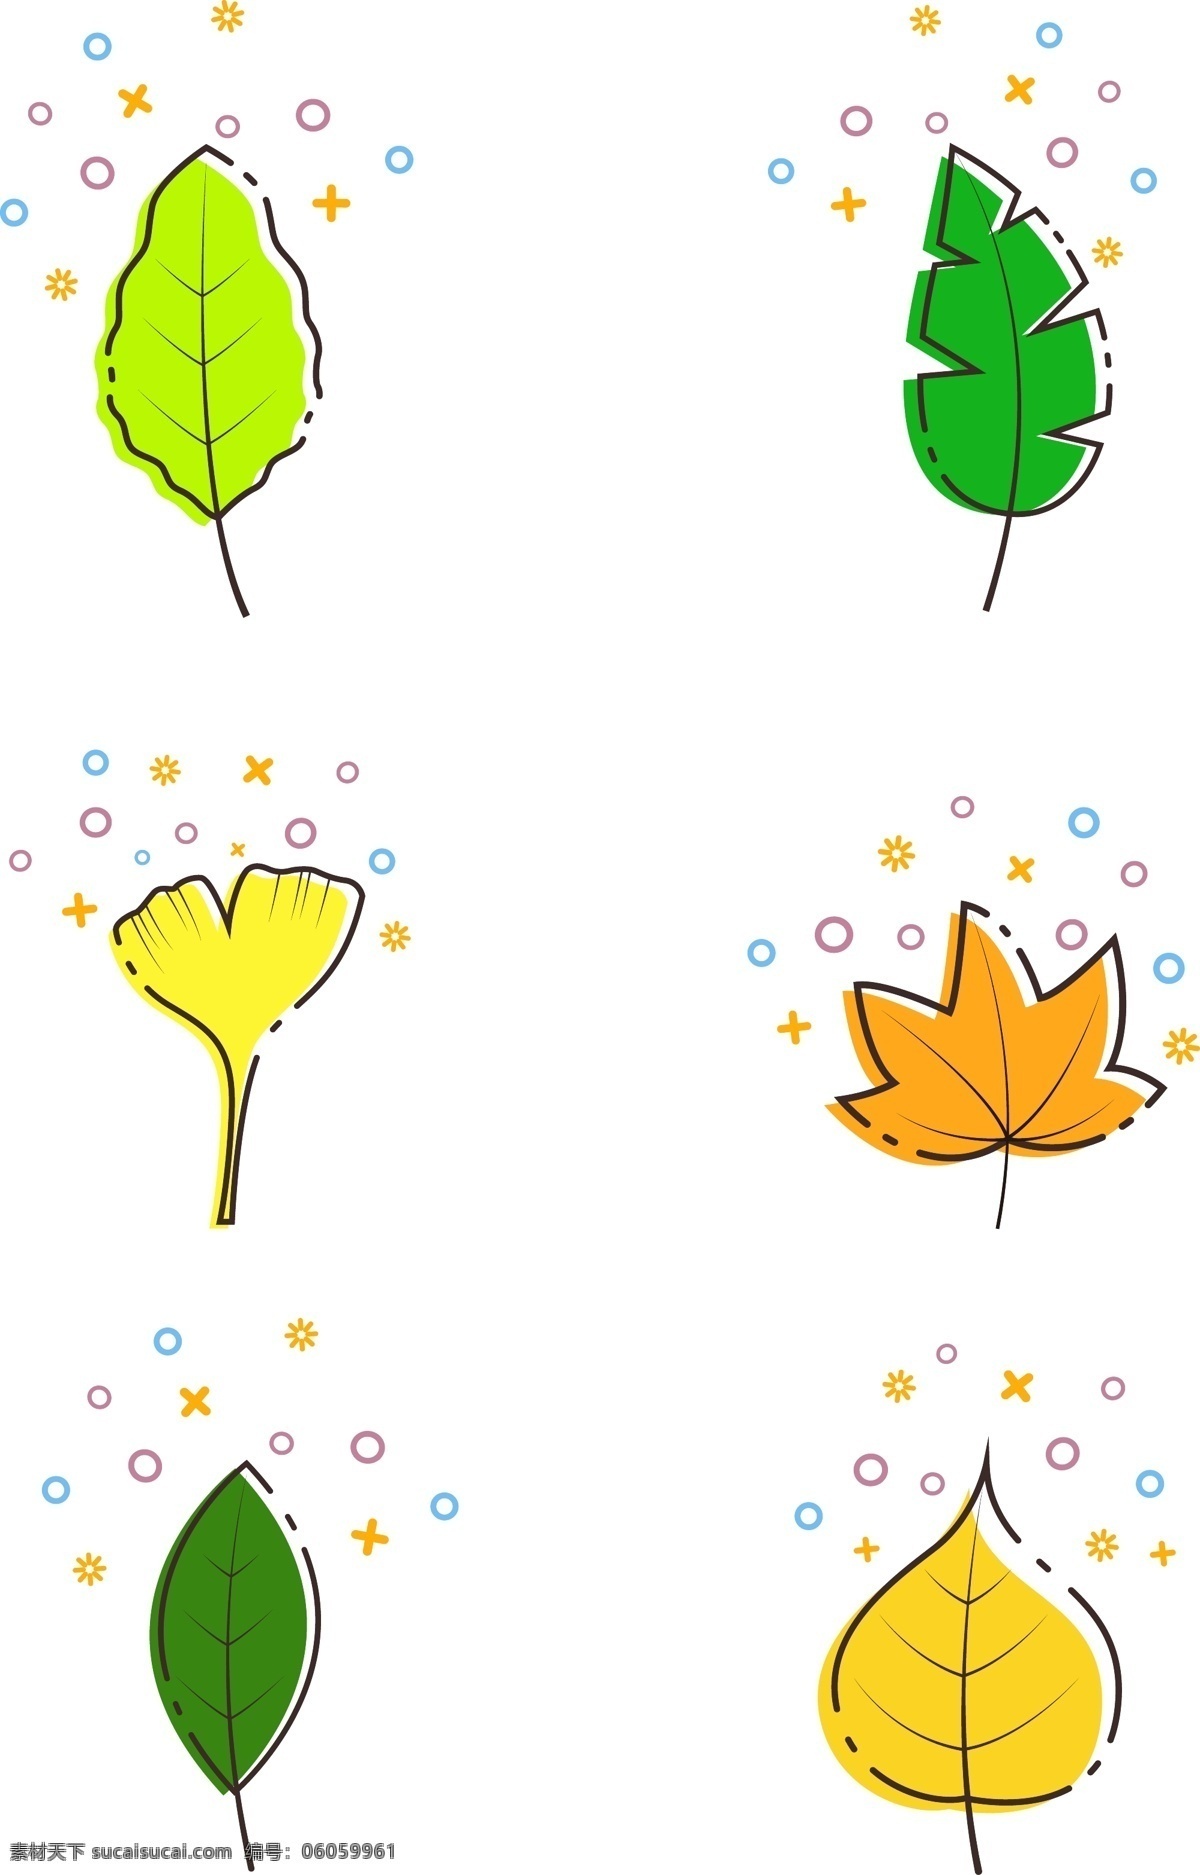 mbe 图标 树叶 卡通 植物 印花 图案 商用 元素 mbe图标 树叶卡通可爱 手绘叶子 矢量树叶素材 枫叶 银杏叶 可爱 插画